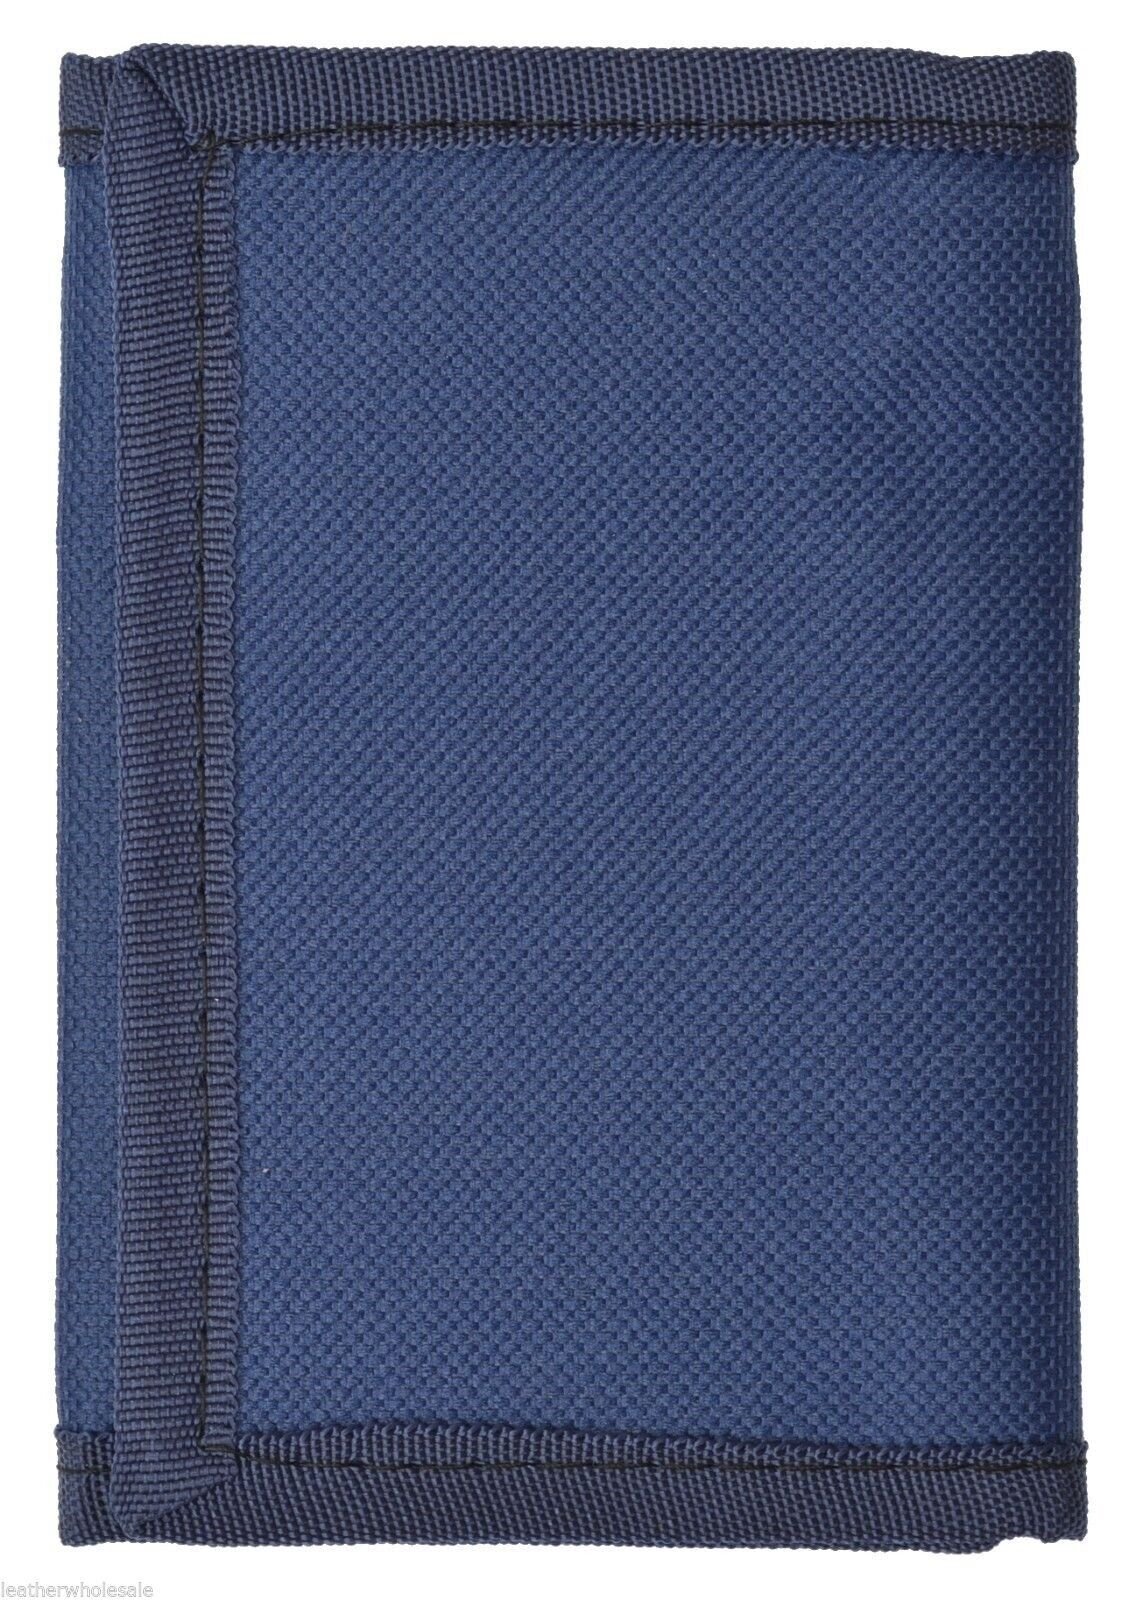 Kids Mens Solid Color Tri-Fold Wallet - Navy Blue